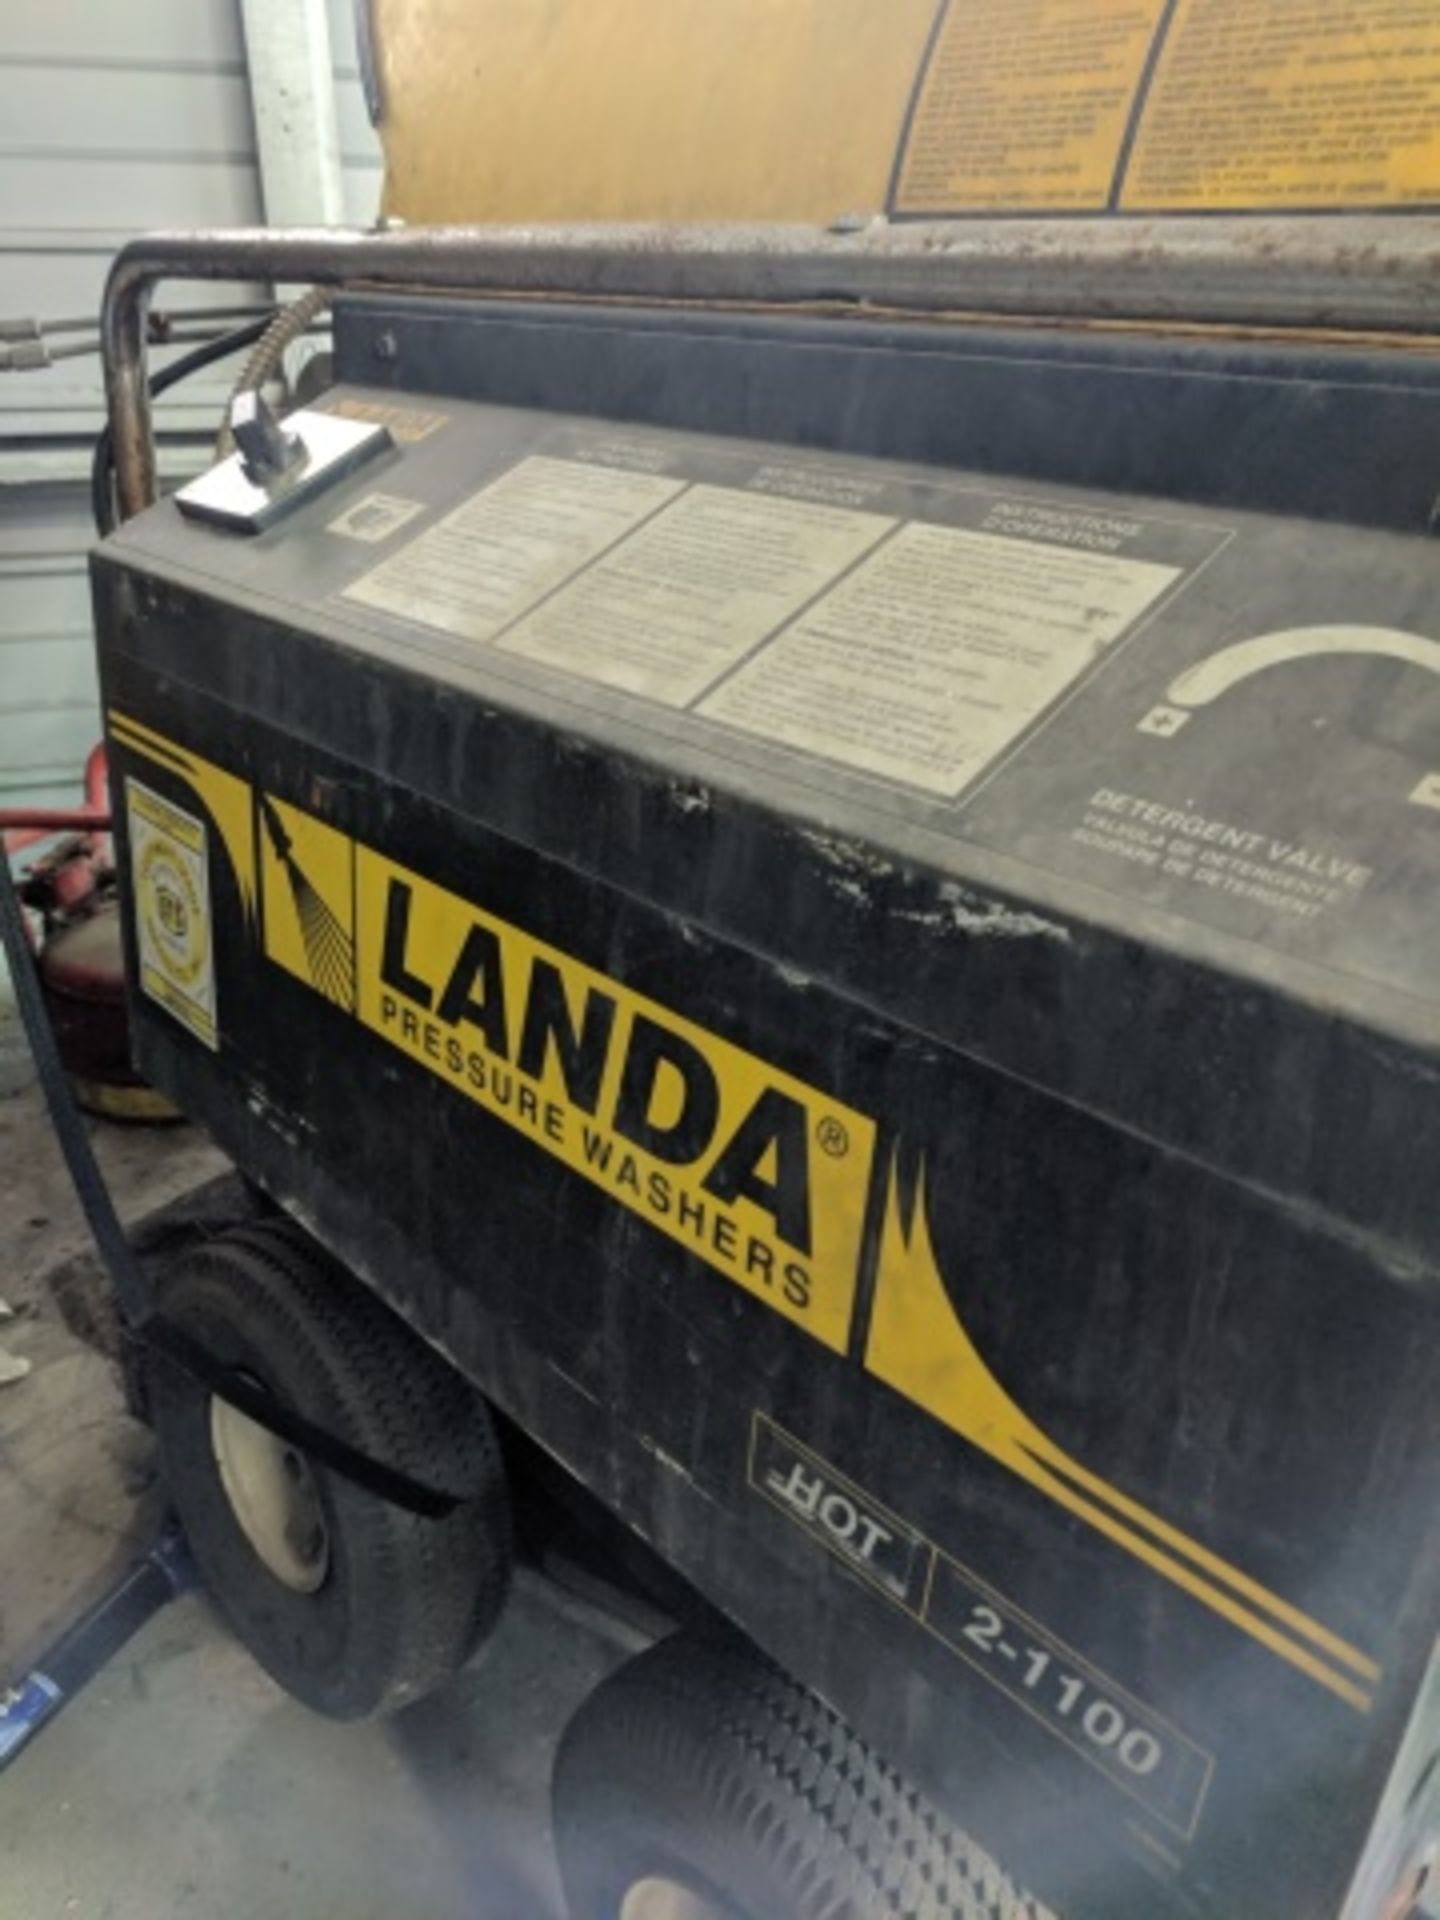 Landa Hot2-1000D (Hot2-11021D) Pressure Washer - Image 2 of 4